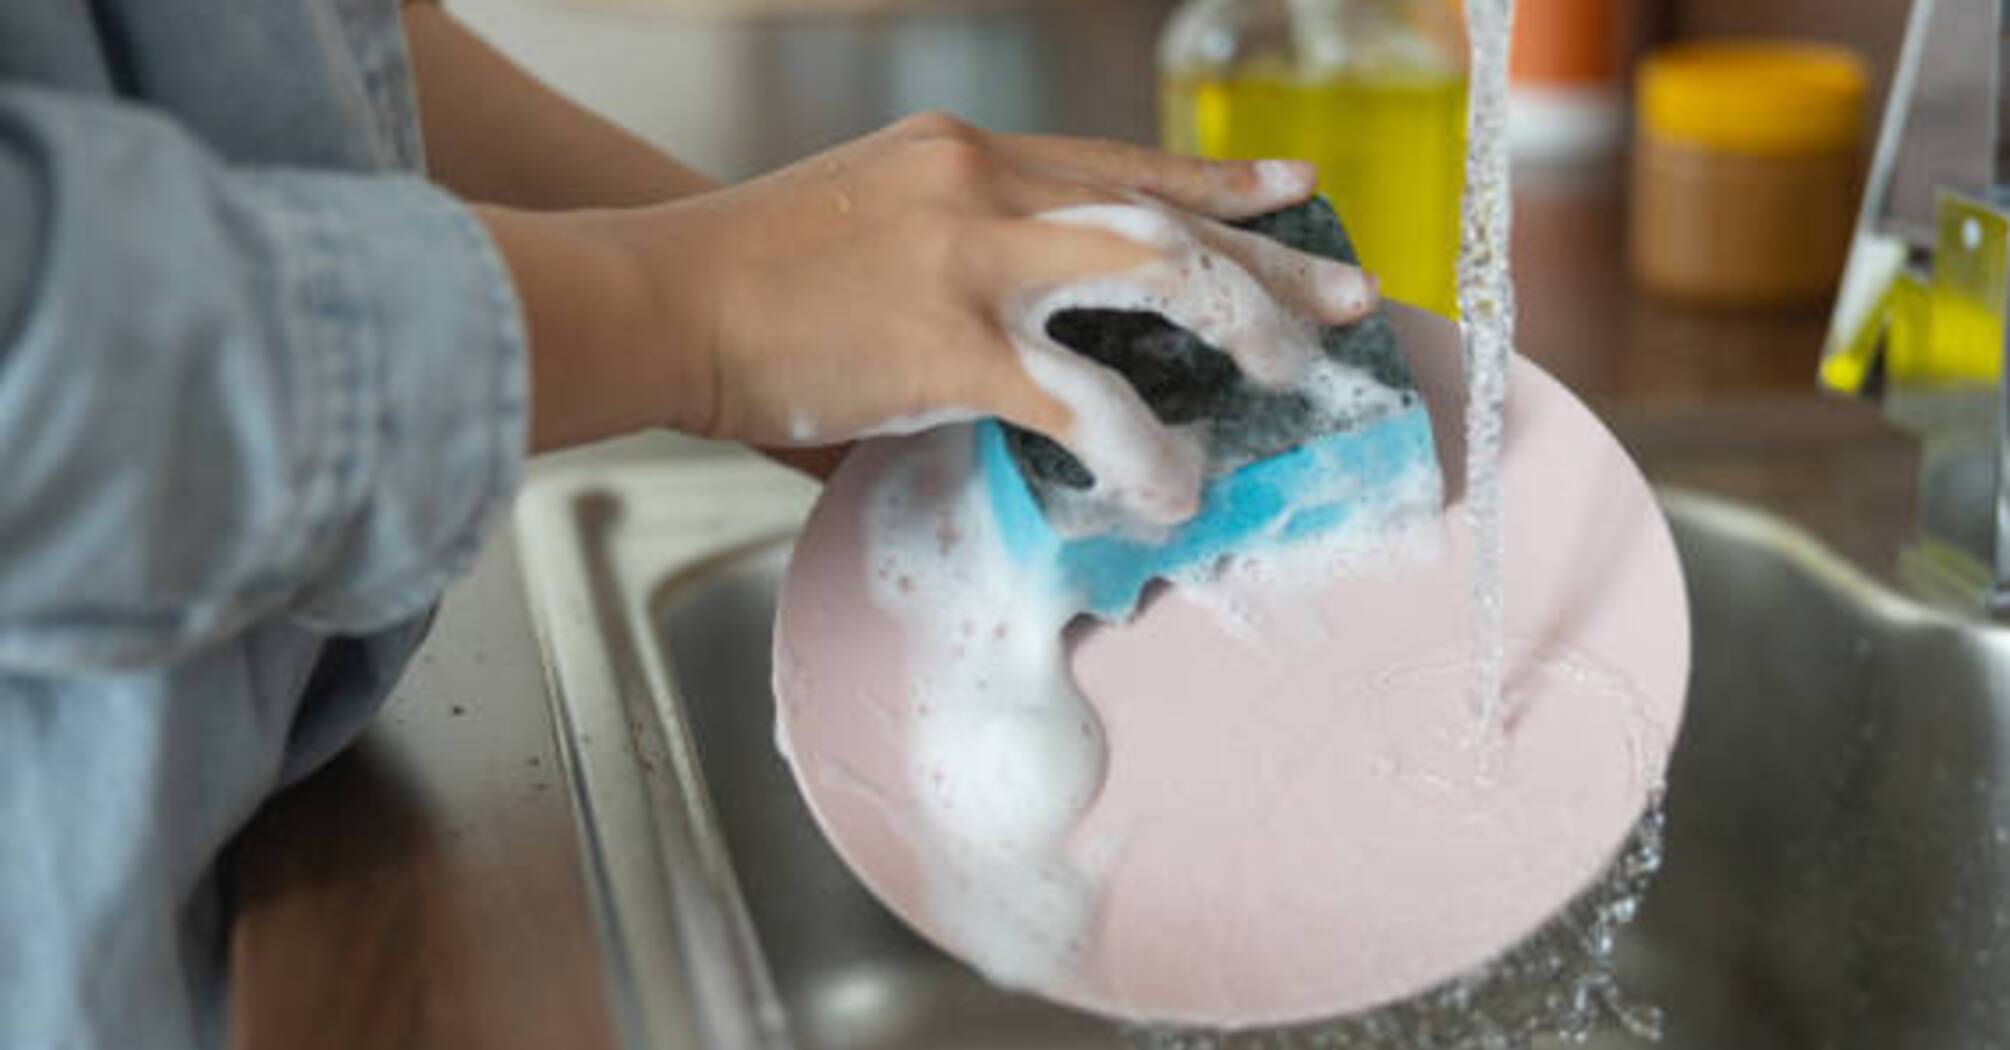 Як легко відмити посуд: 5 порад від досвідчених домогосподарок